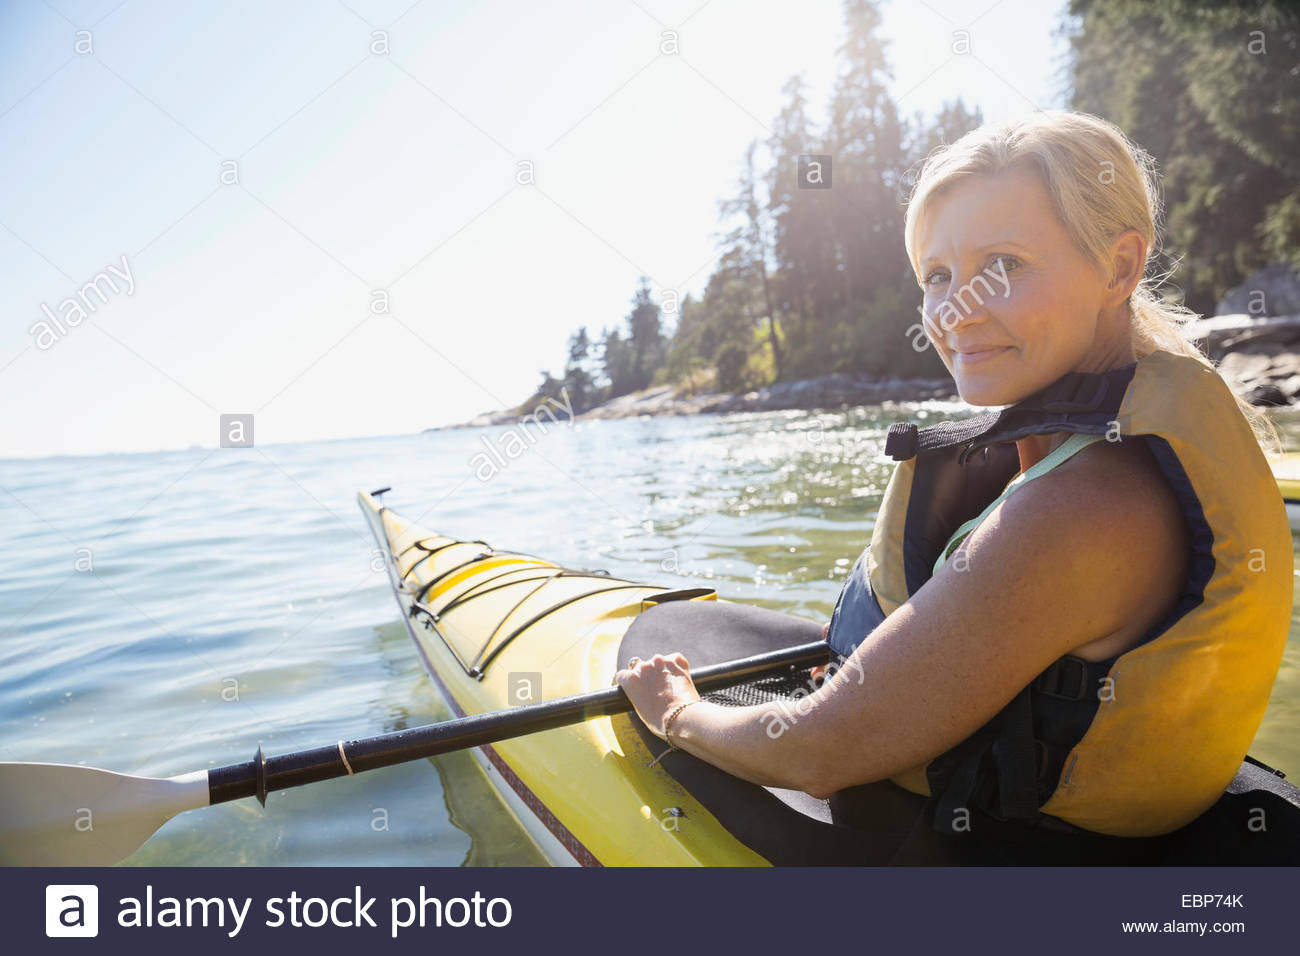 Portrait of woman kayaking on sunny ocean Stock Photo